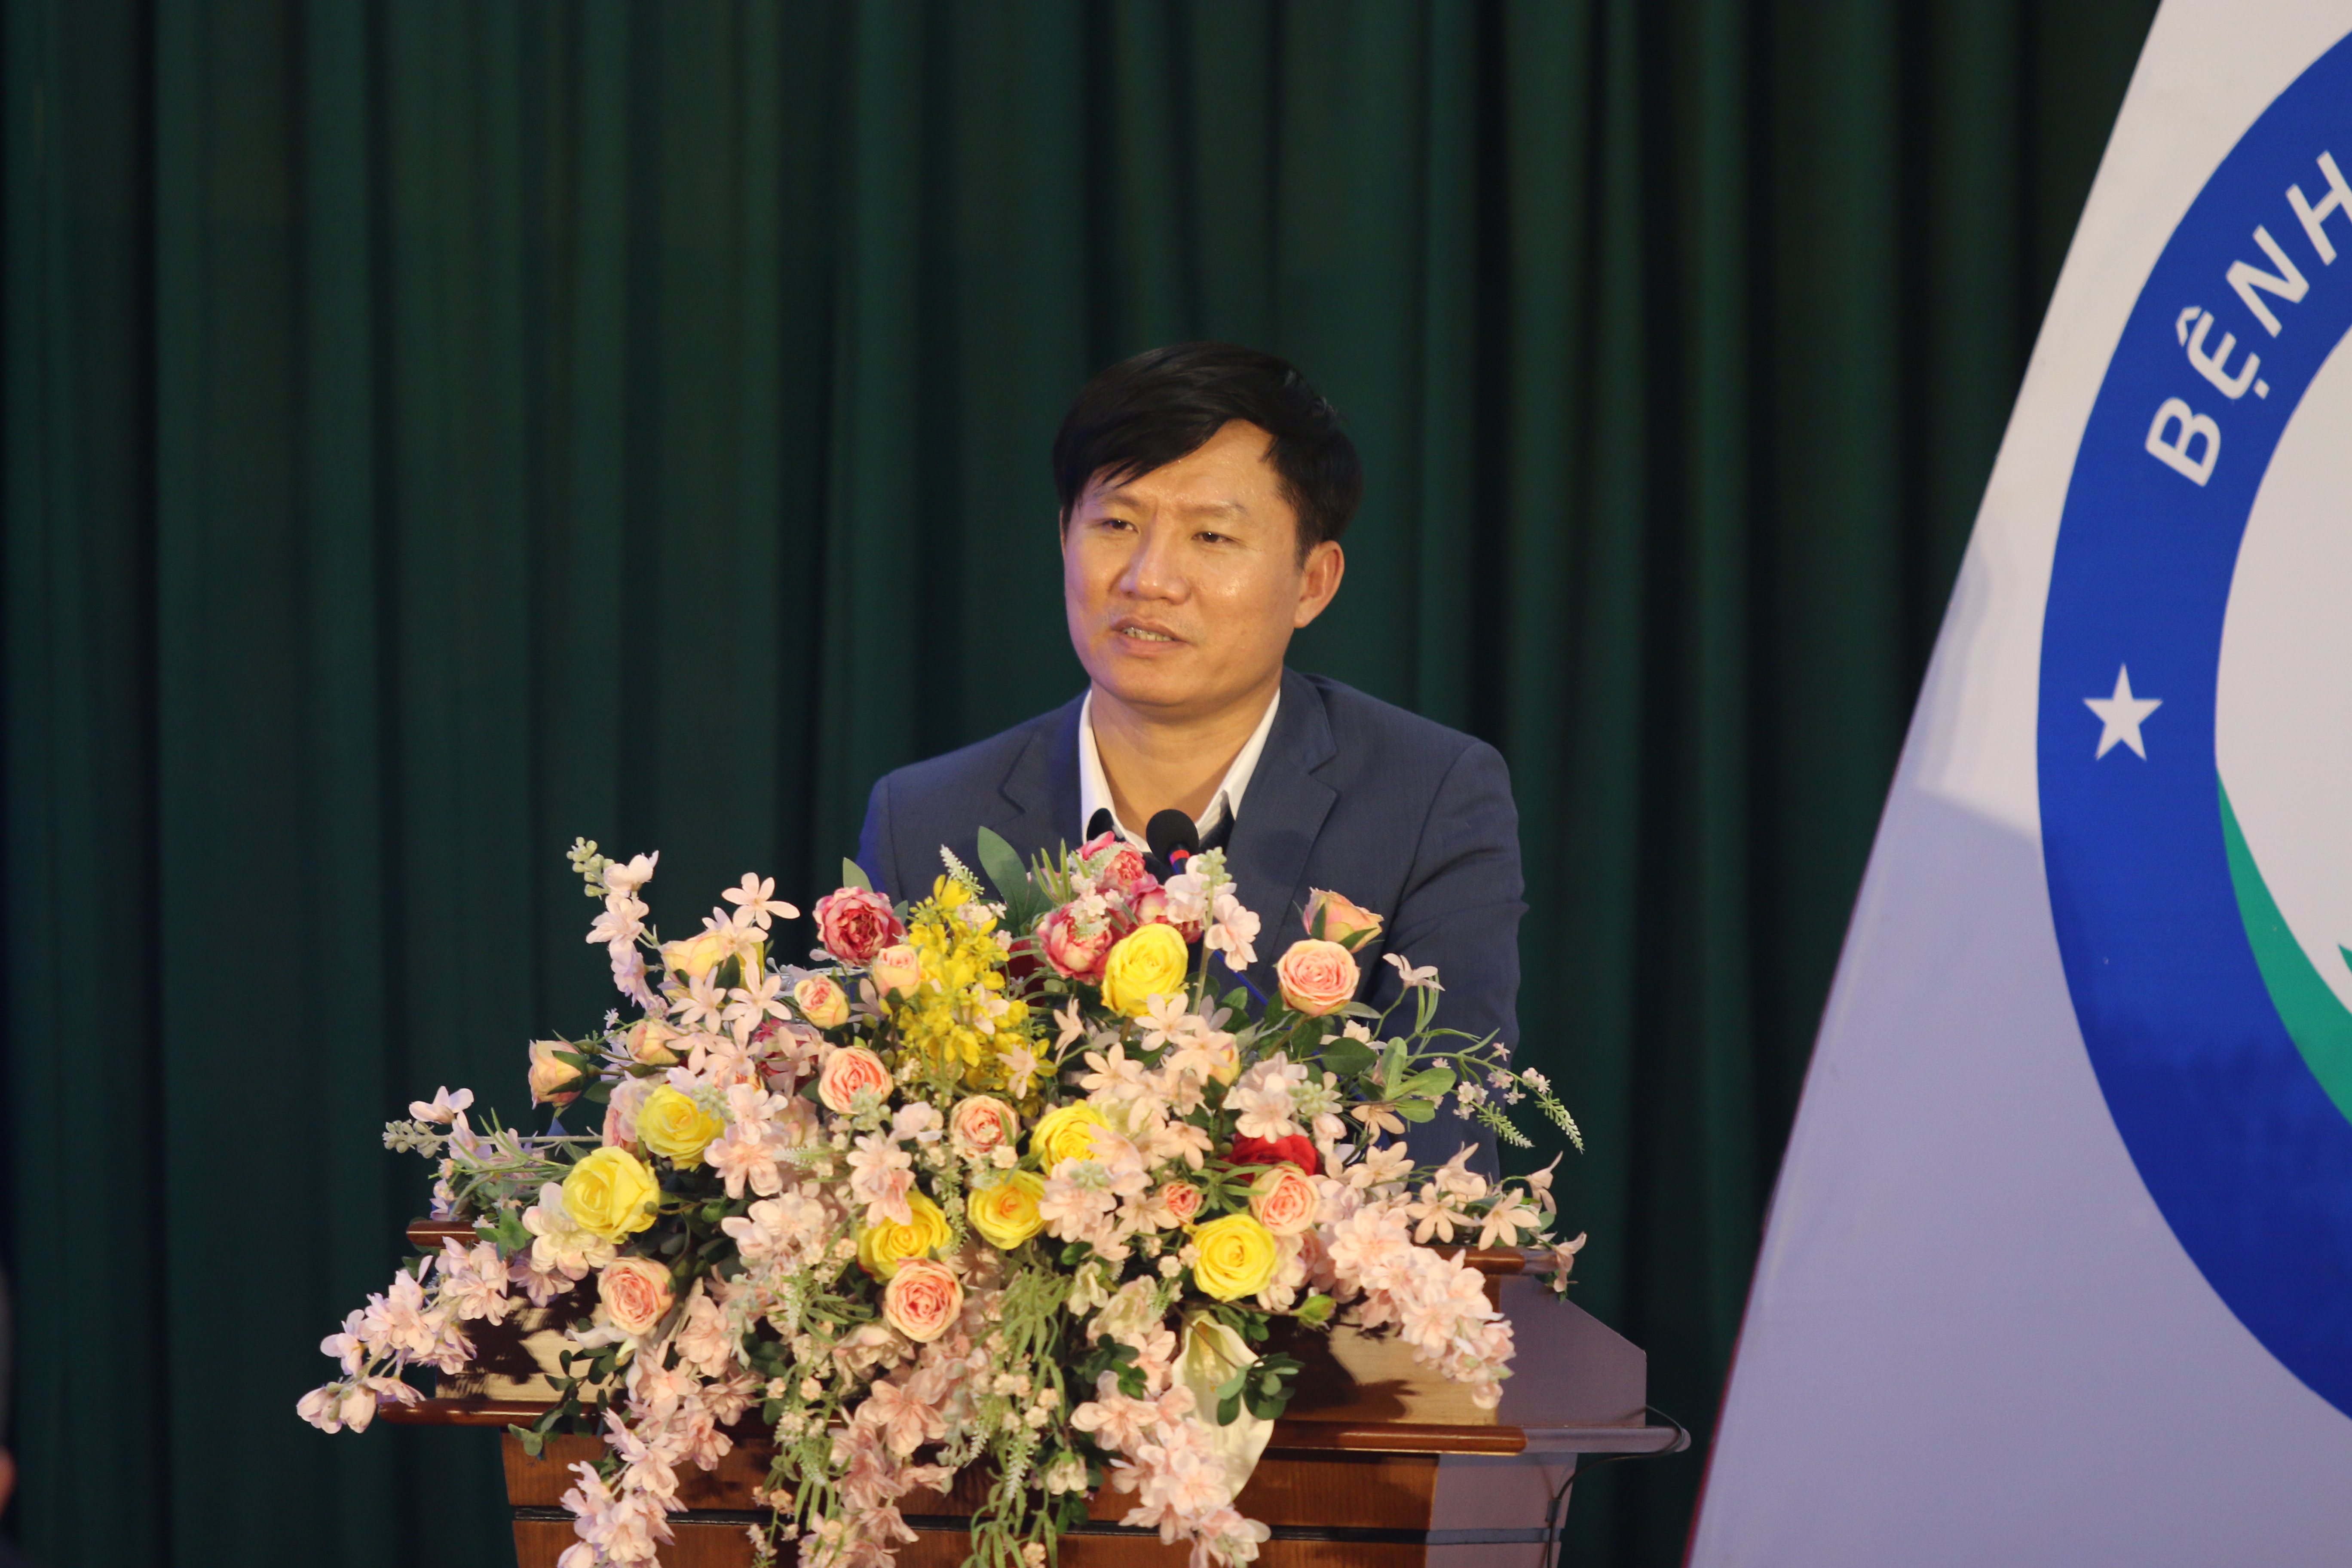 Ông Nguyễn Đình Danh - Phó Tổng Giám đốc VNPT ghi nhận và đánh giá cao kết quả mà Bệnh viện Bưu điện đã đạt được trong năm 2022 